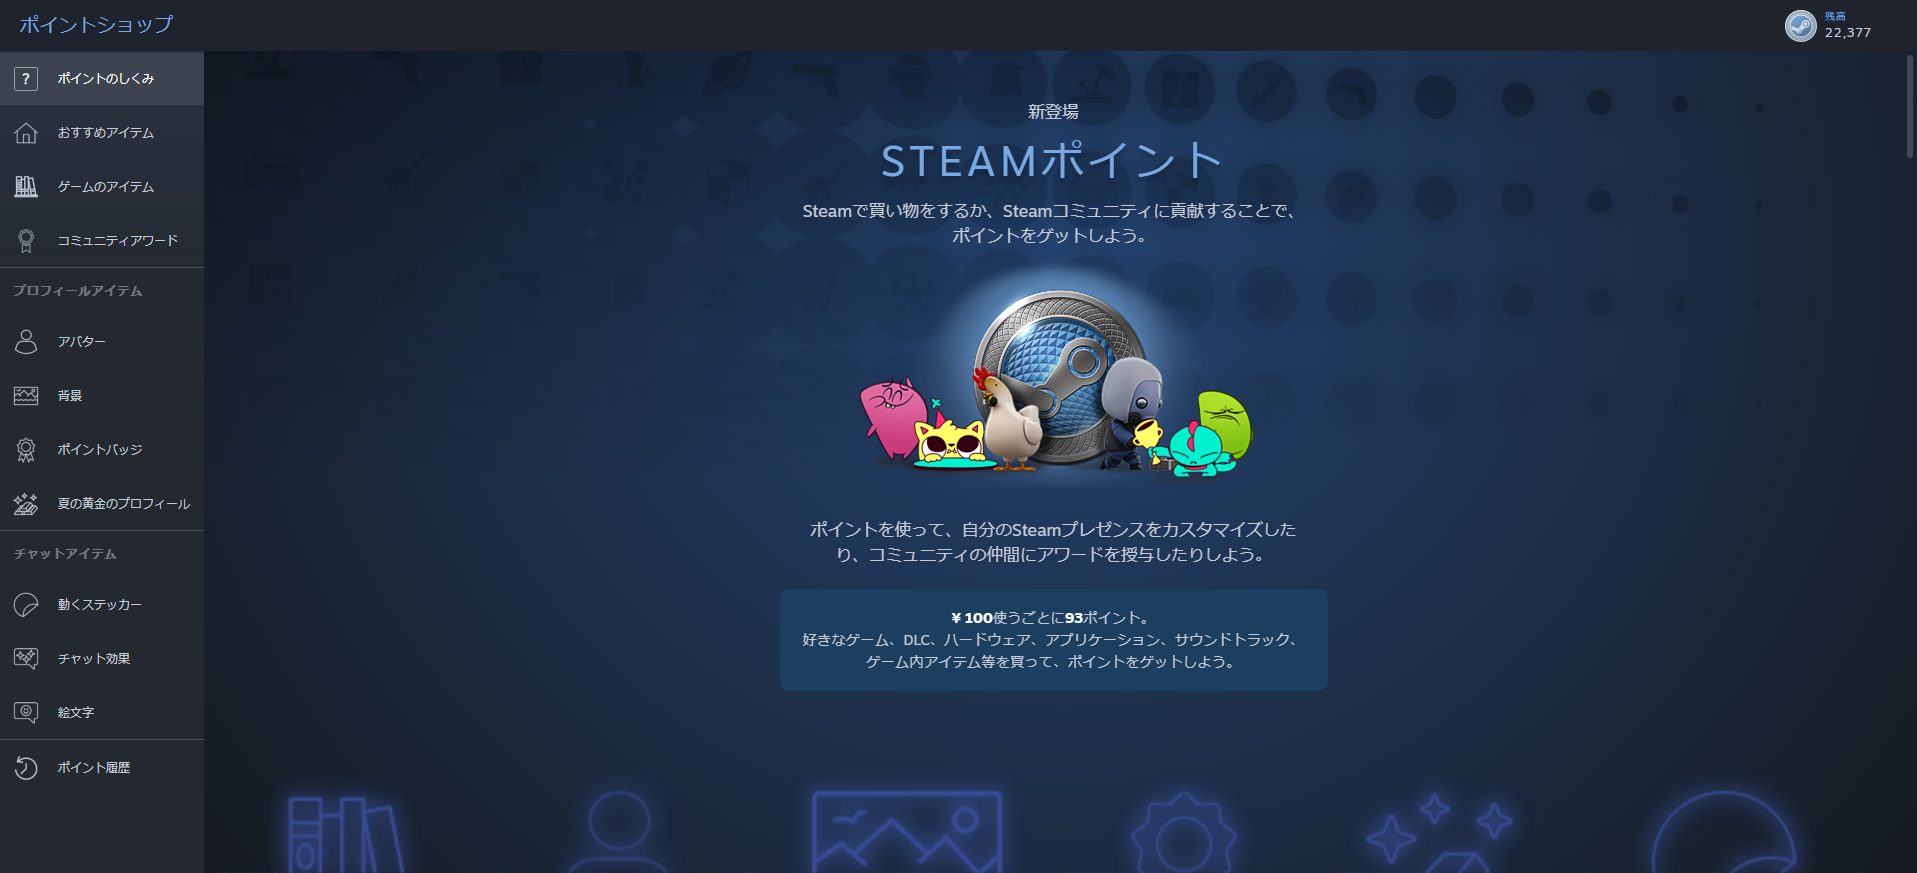 Steamポイント の仕組みと使い道を紹介 Maruhoi1 S Blog